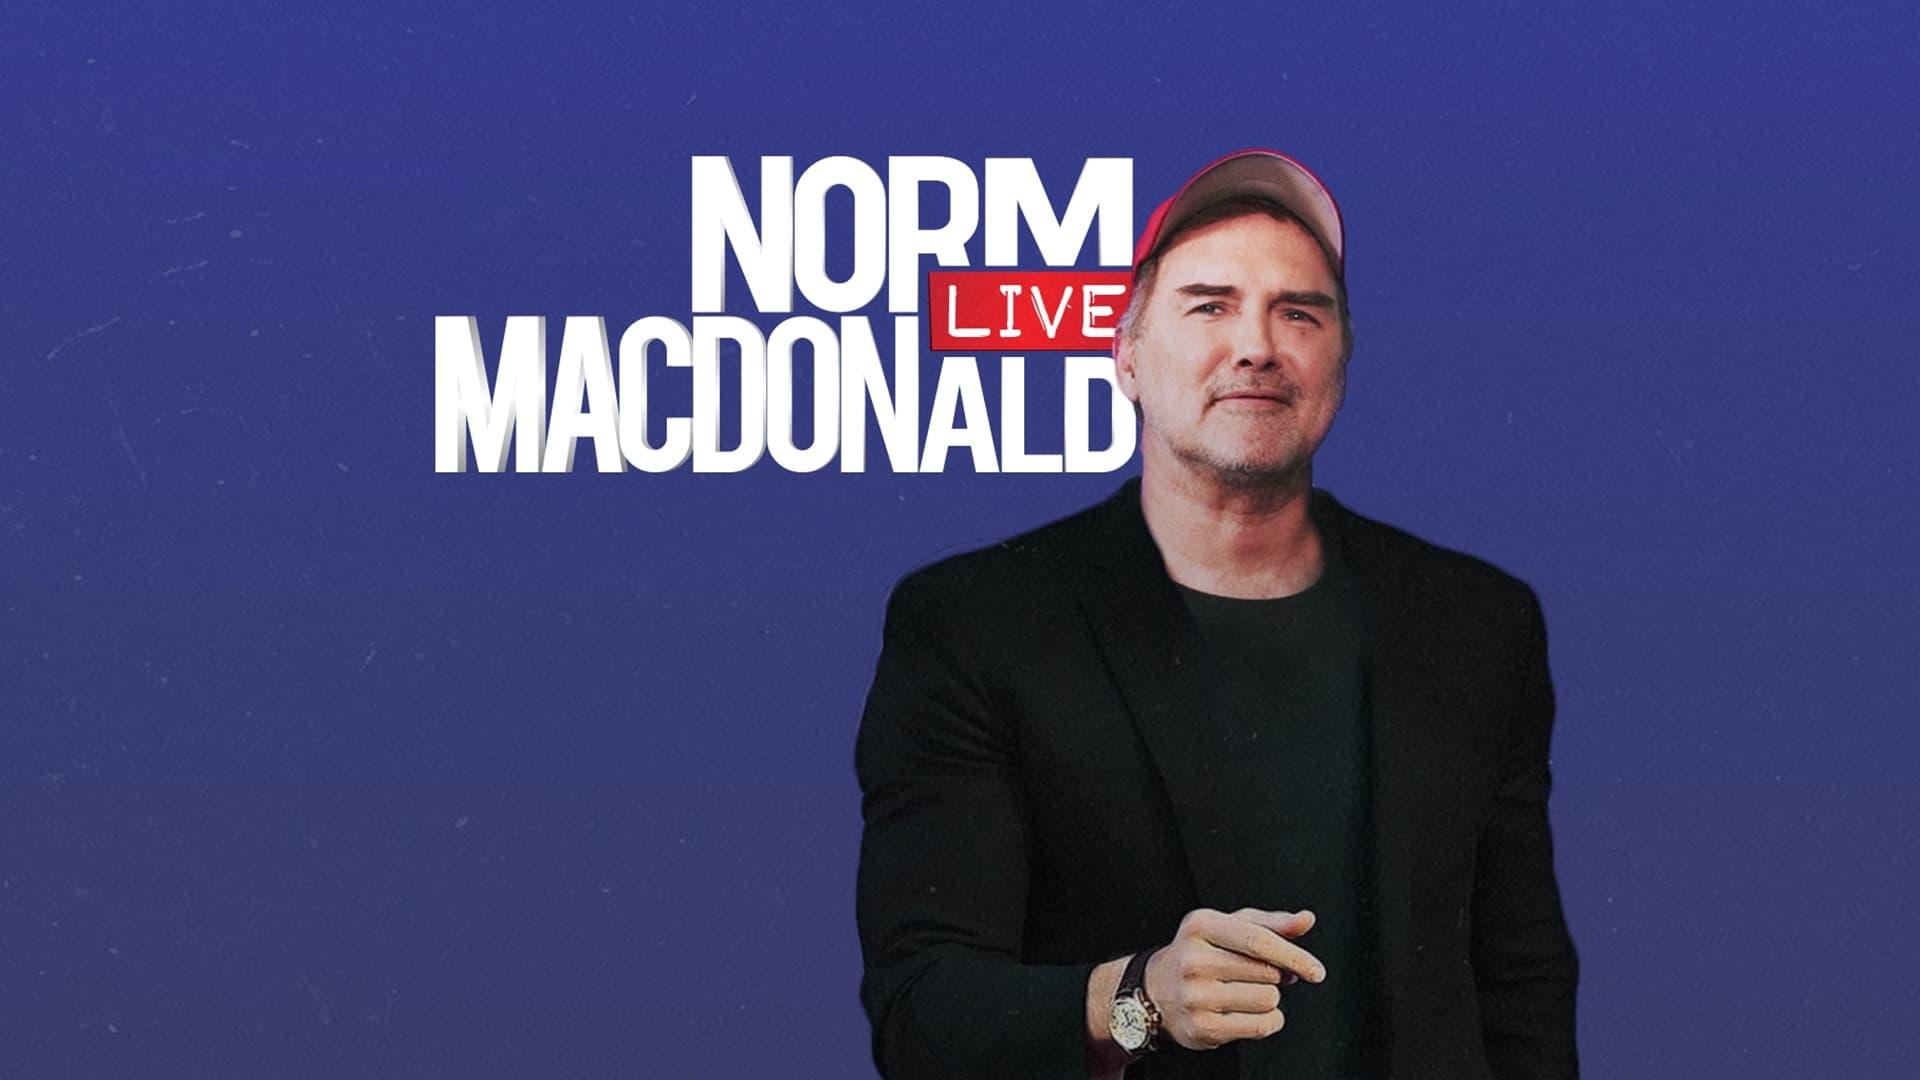 Norm Macdonald Live backdrop